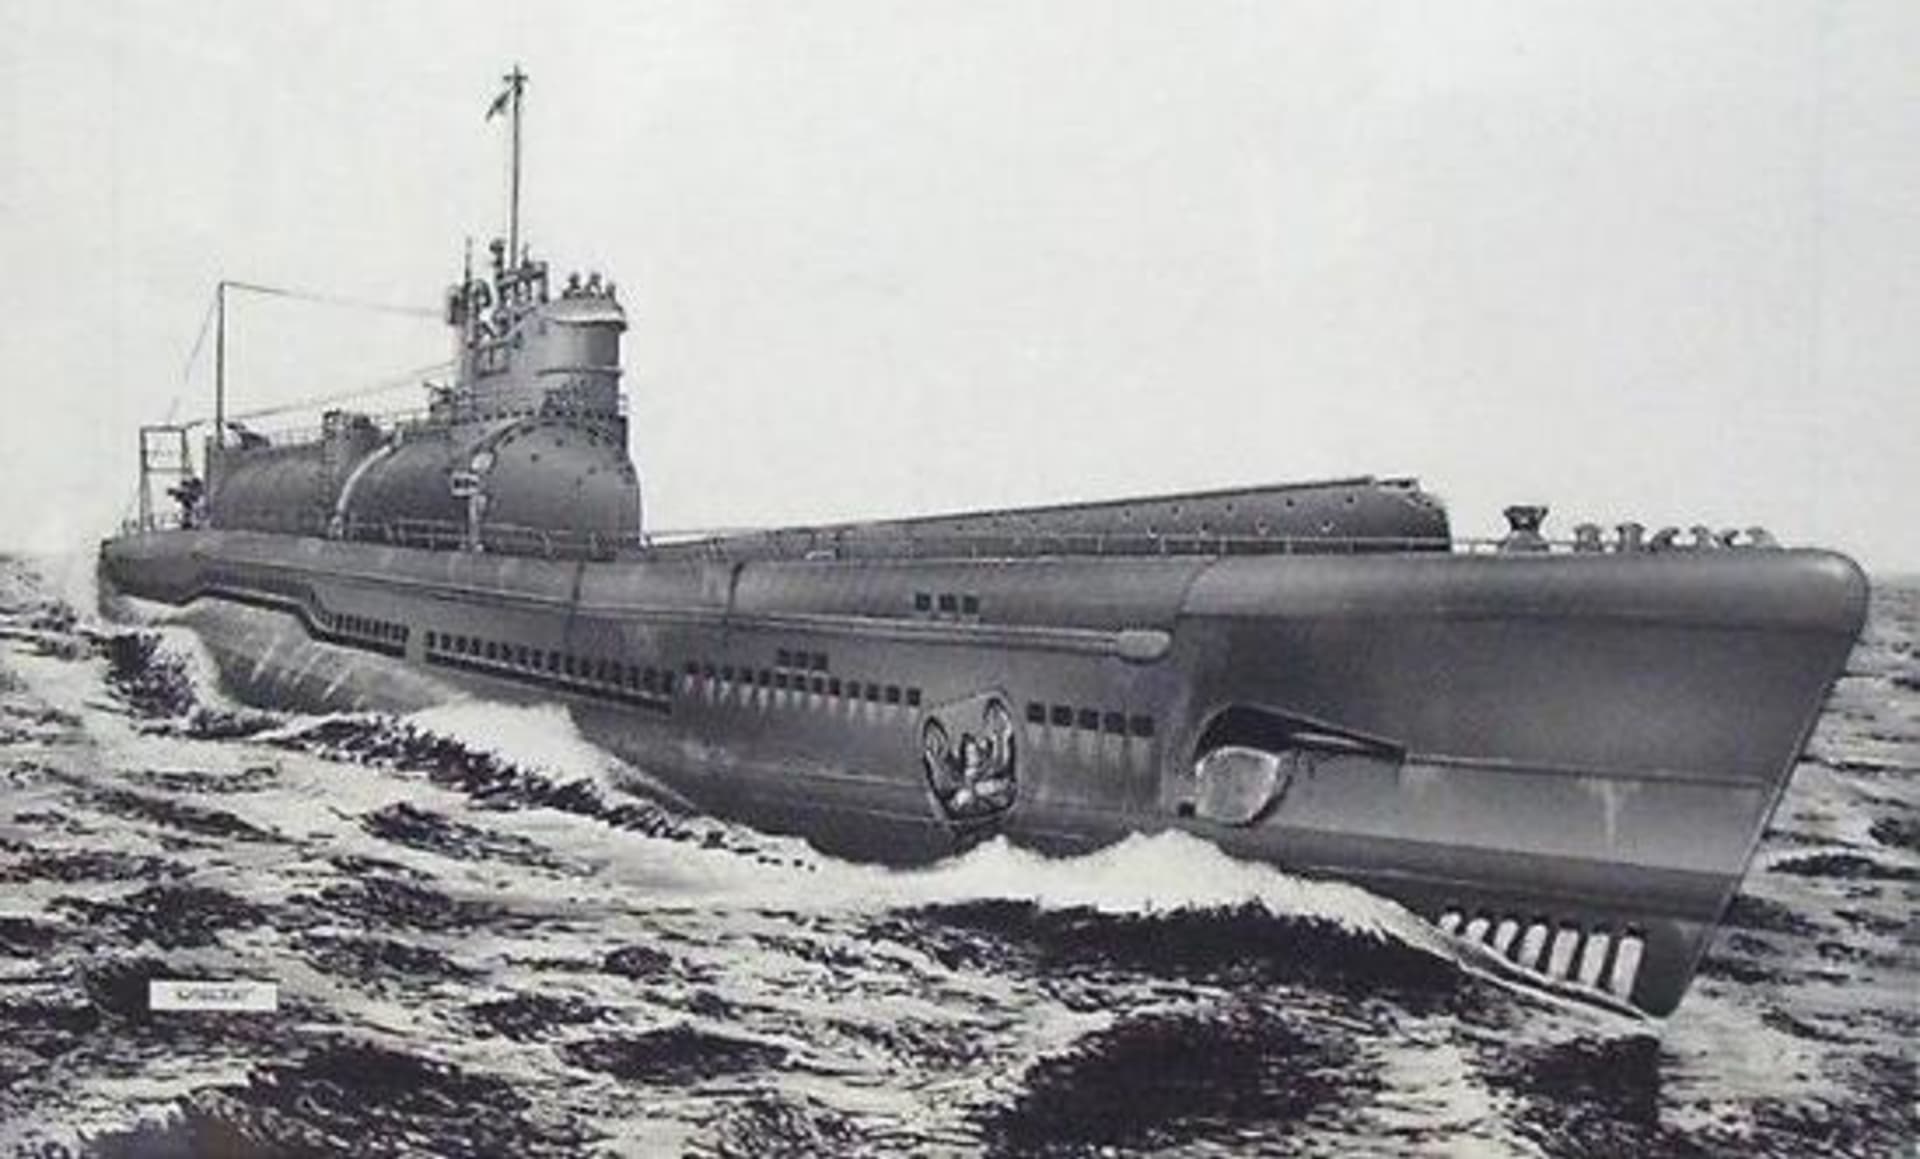 Japonská ponorka I-400 ilustrační obrázek největší japonské ponorky 2. světové války